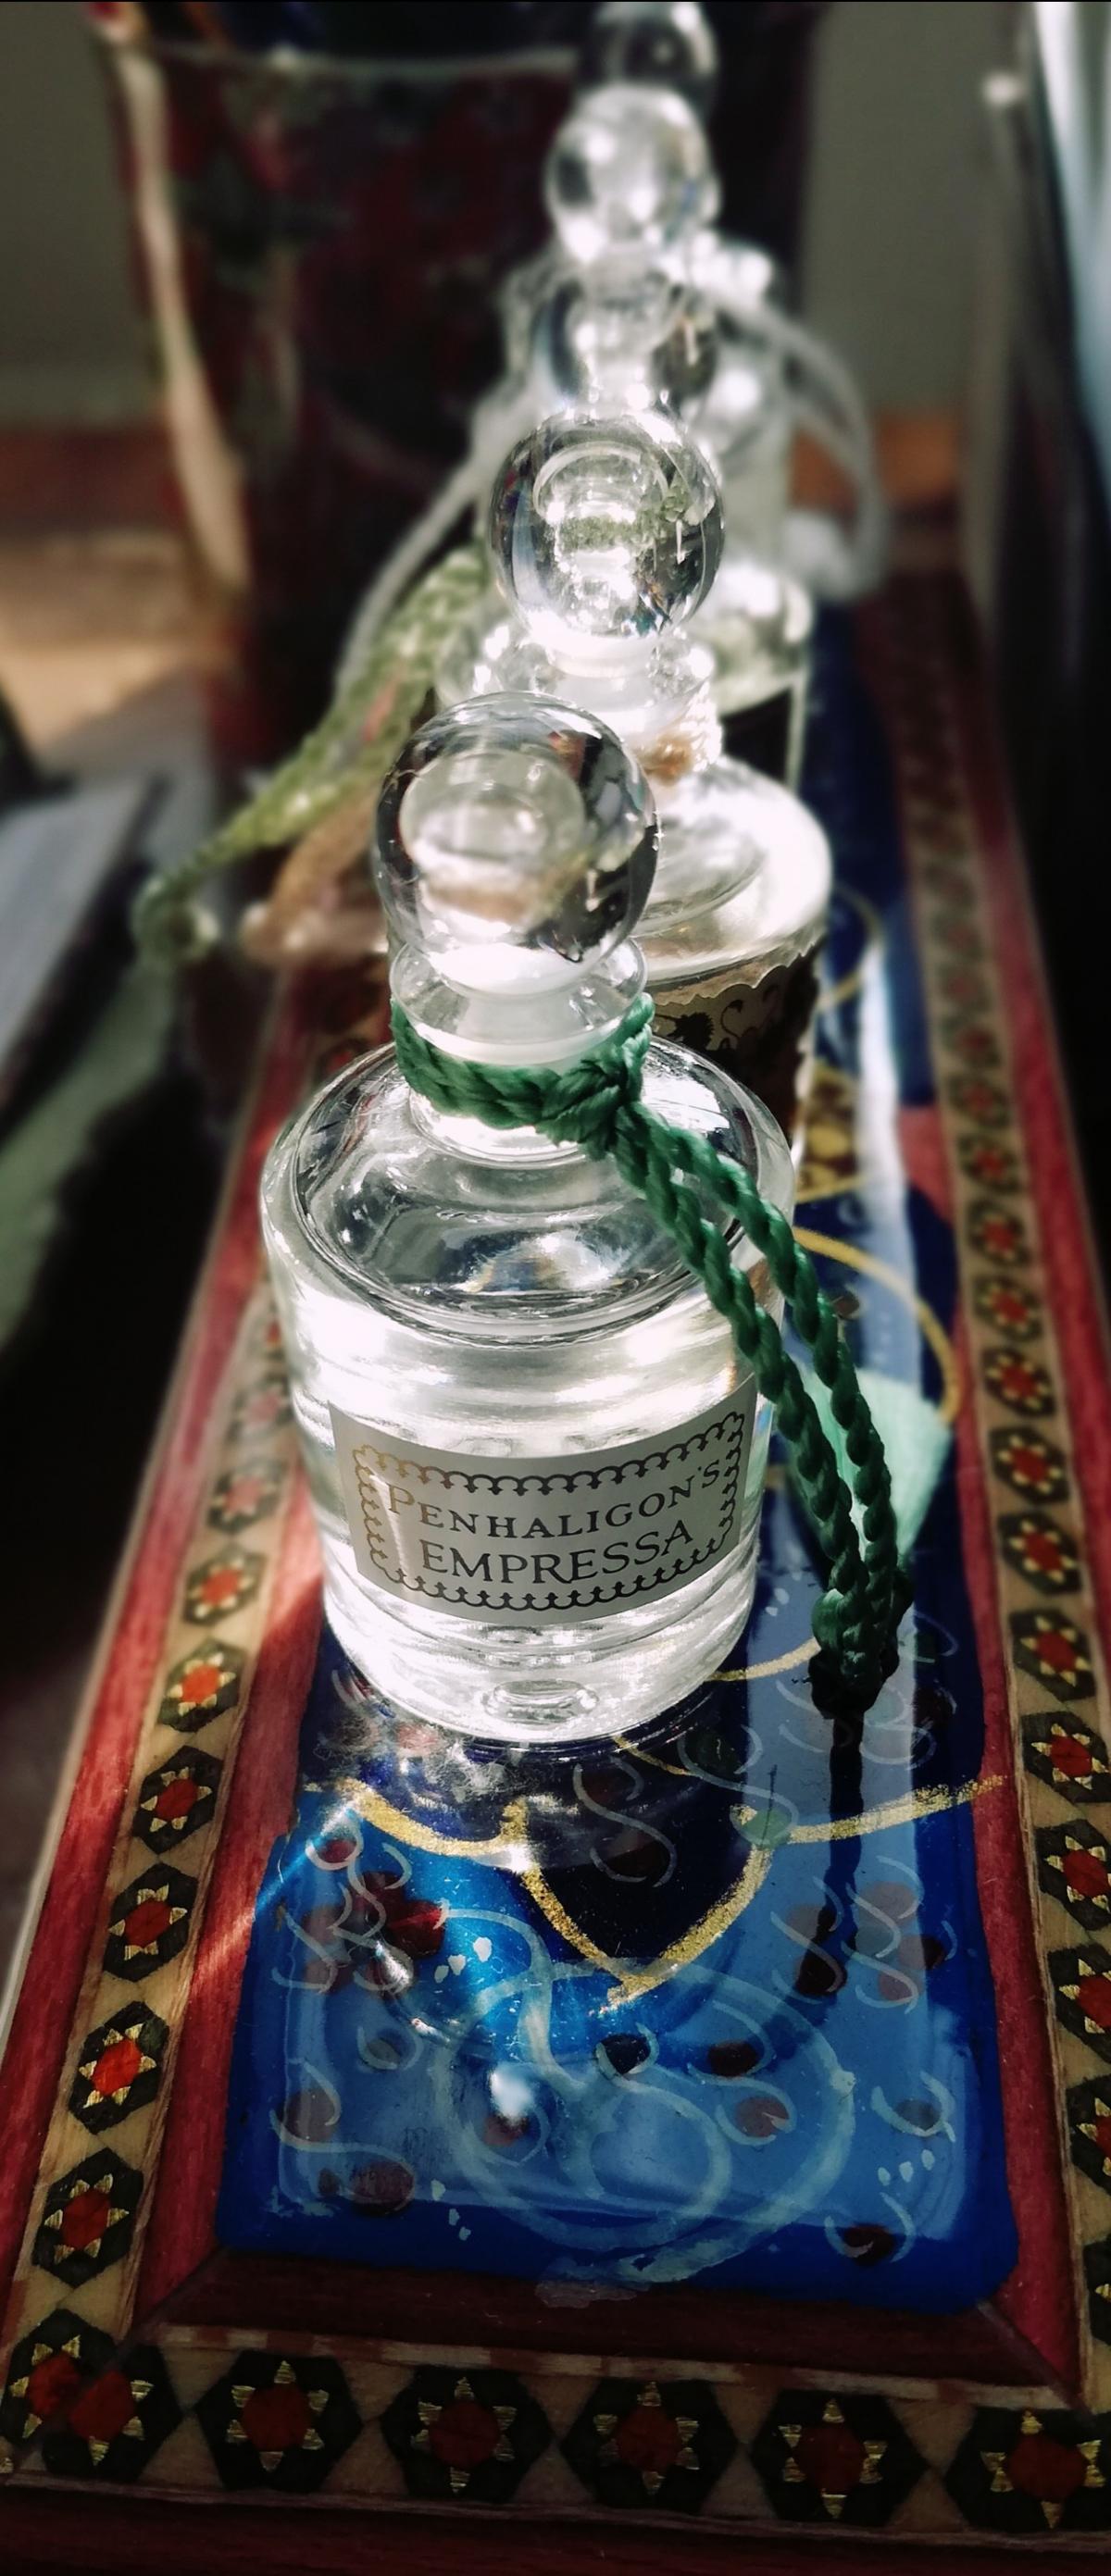 Empressa Penhaligon's perfume - a fragrance for women 2014